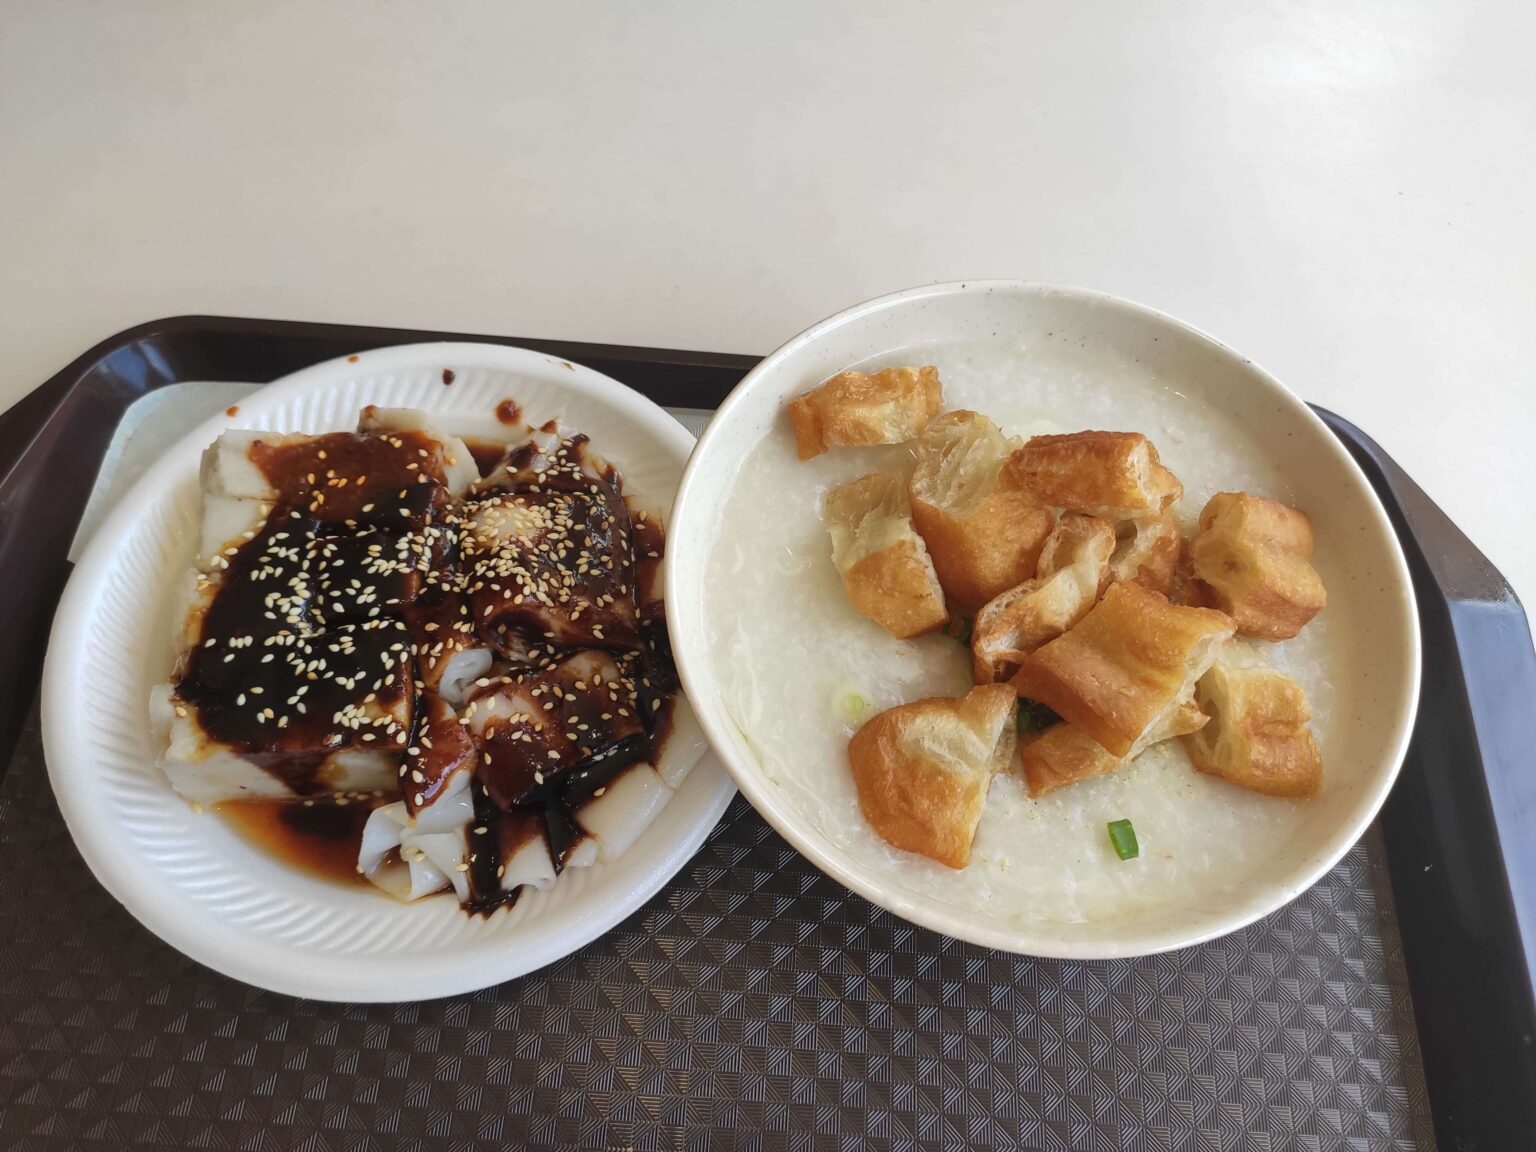 Yi Pin Zhou Porridge Pot: Yam Cake, Chee Cheong Fun & Pork Porridge